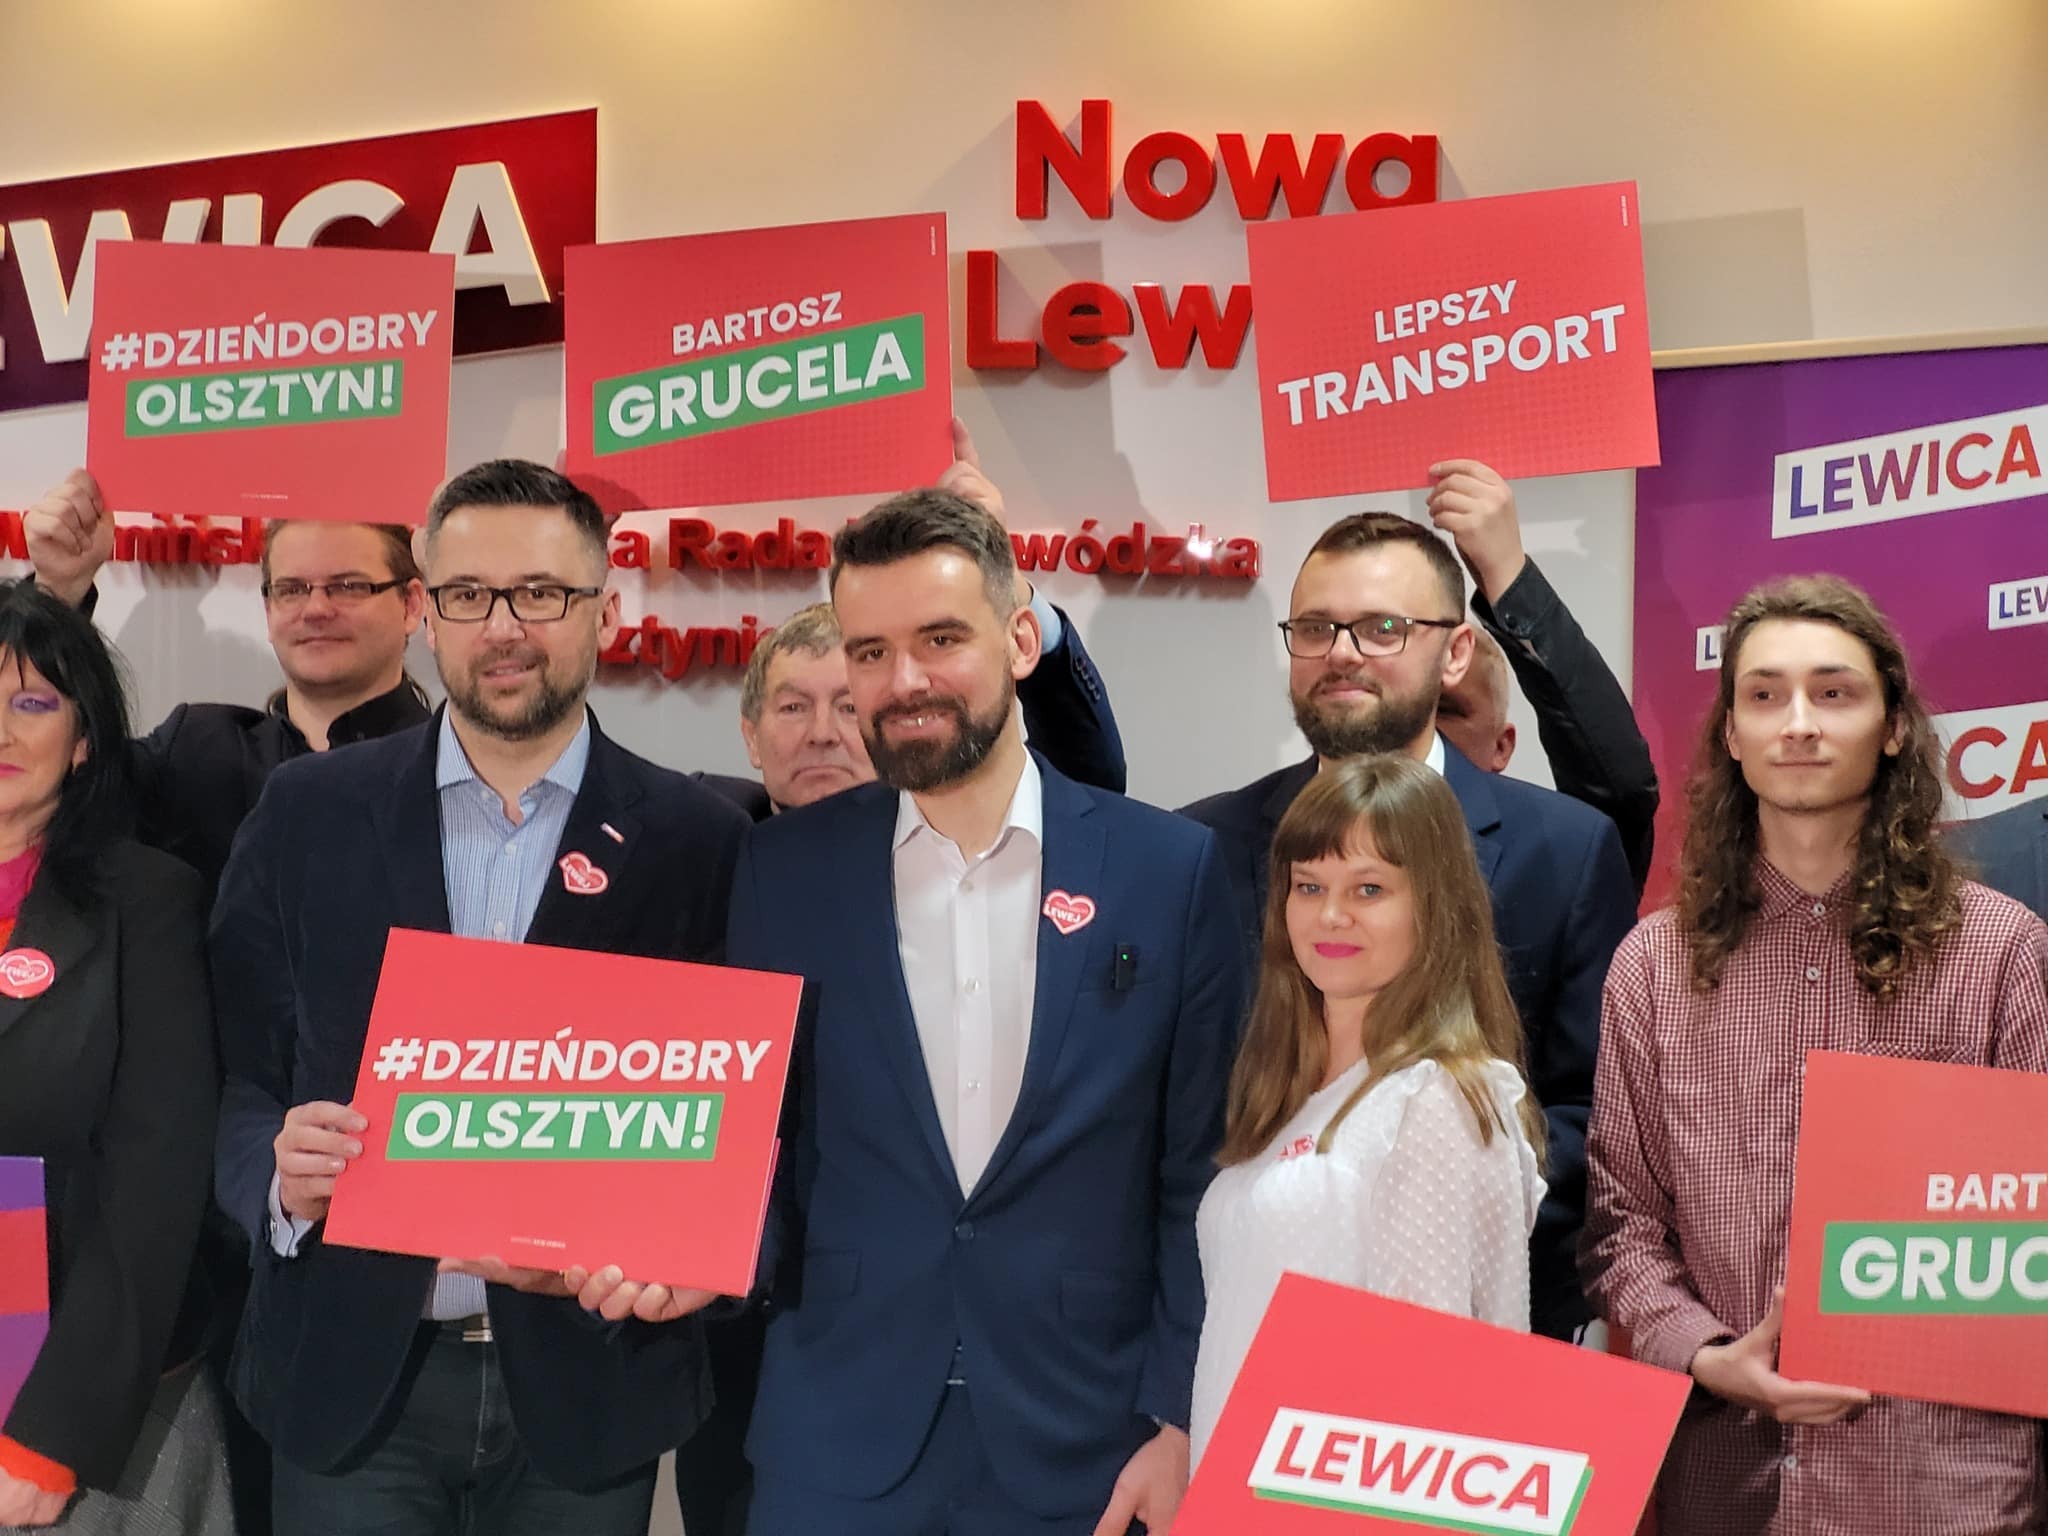 Lewica prezentuje swoich kandydatów do Rady Miasta Olsztyna polityka Olsztyn, Wiadomości, zShowcase